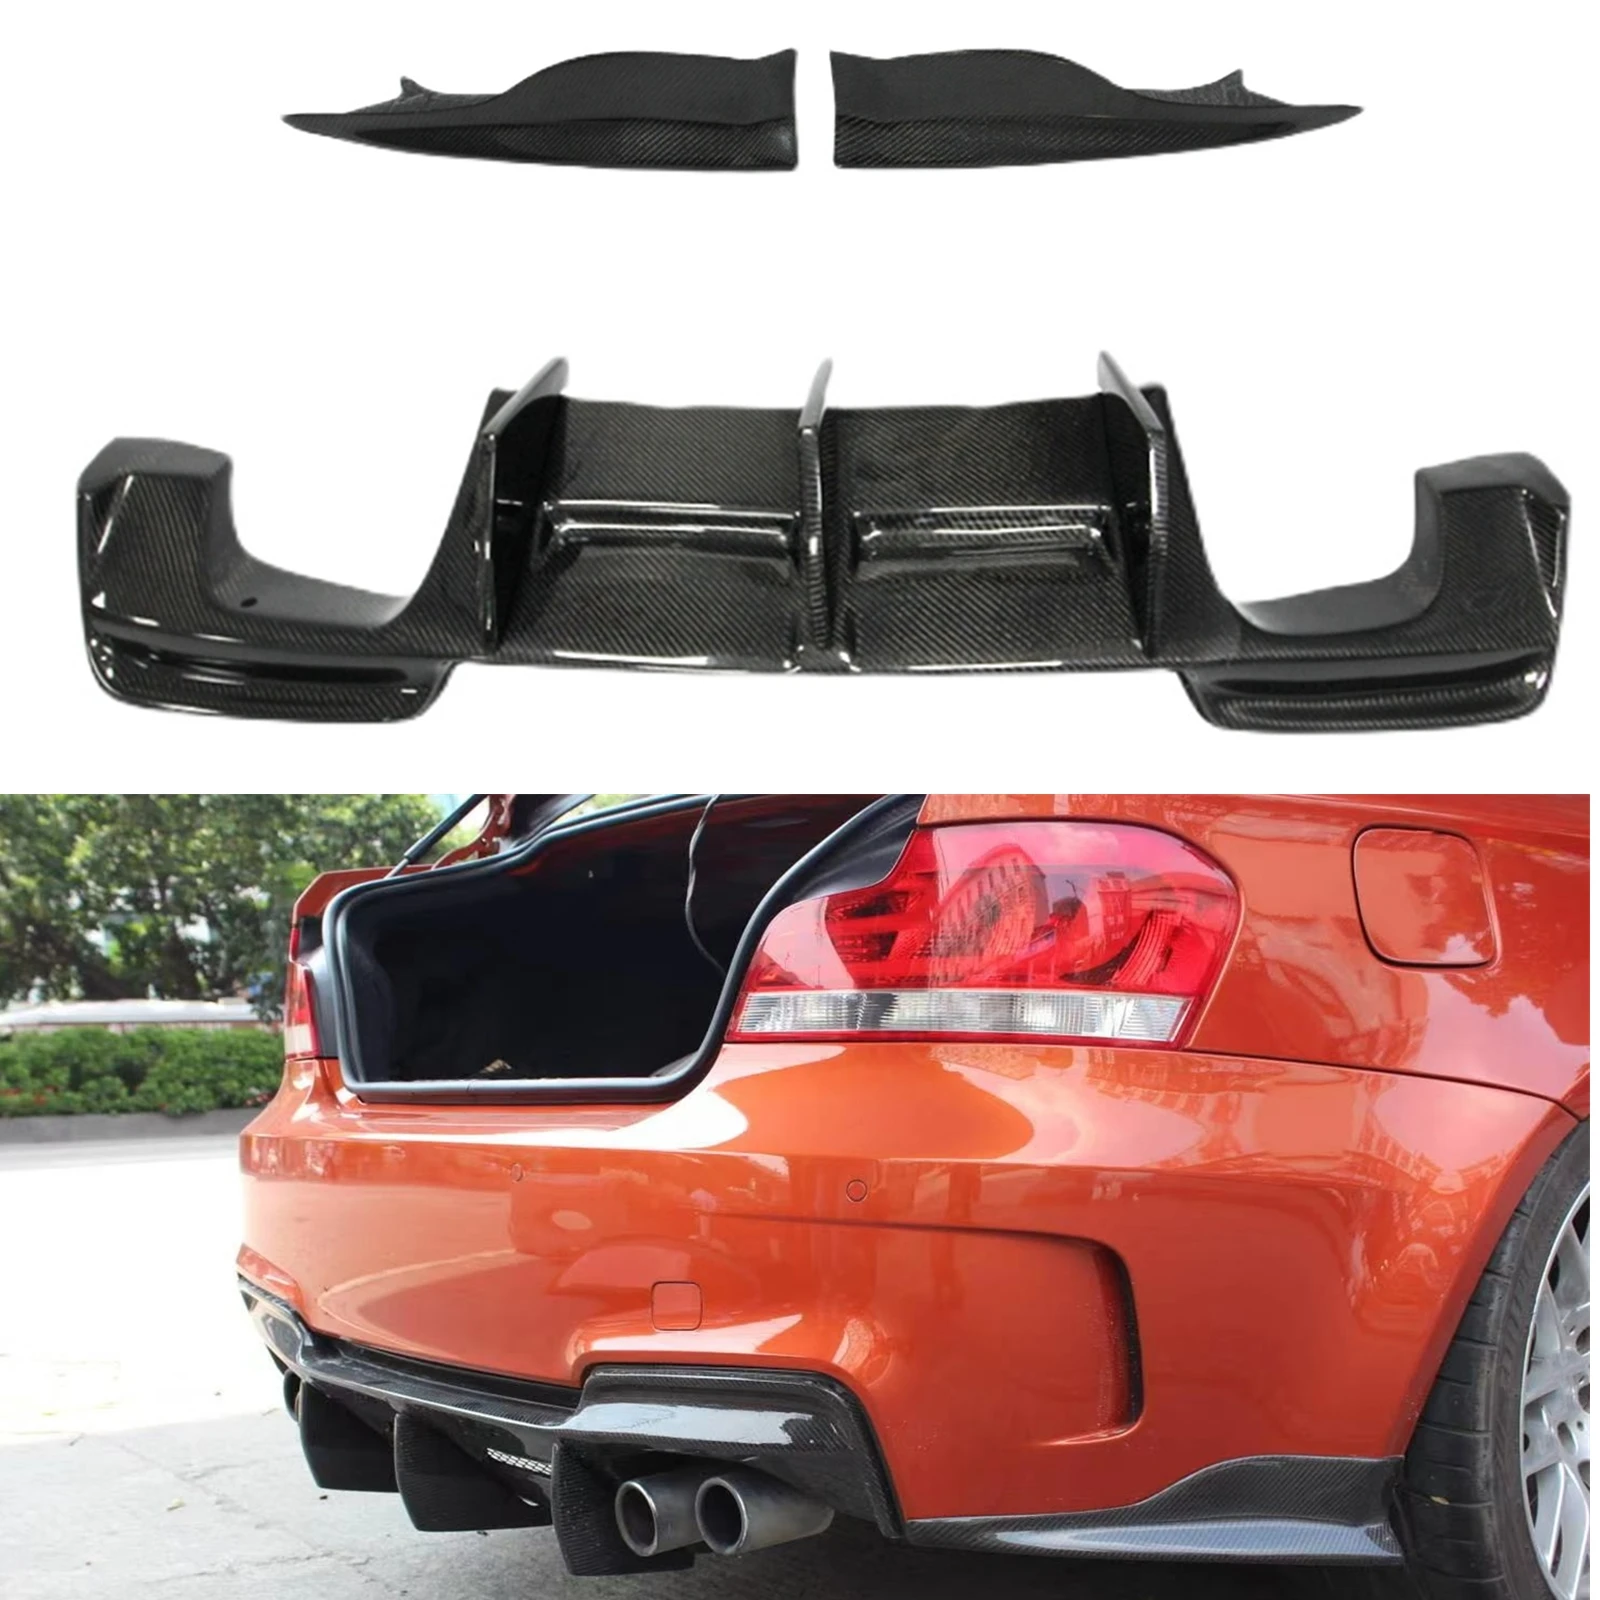 

Carbon Fiber Rear Lower Side Spoiler Lip Cover & Bumper Diffuser Guard Plate For BMW 1 Series E82 & E88 1M RZ Style